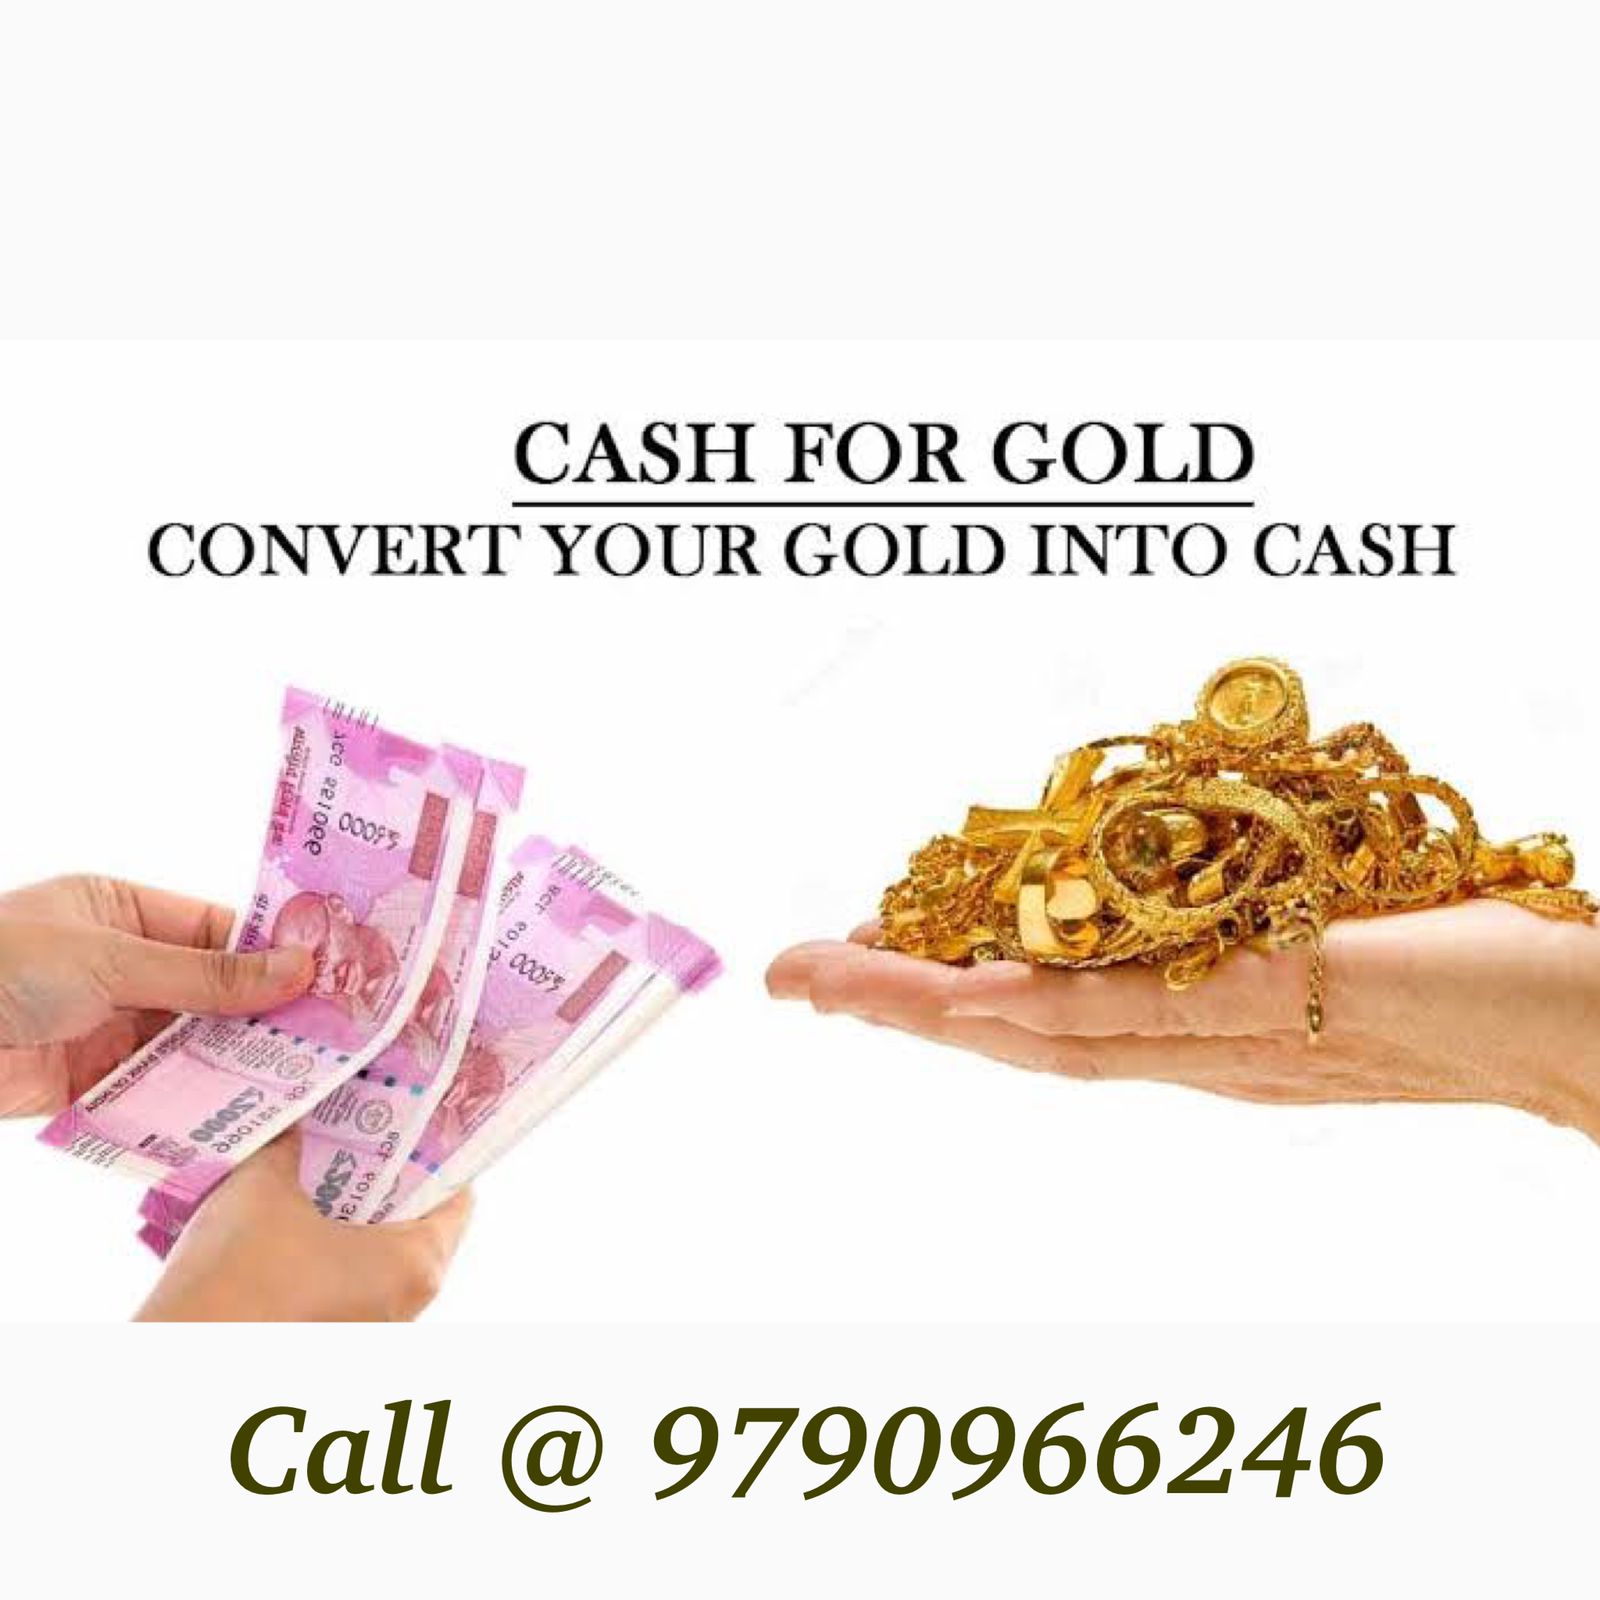 Gold loan | Cash for Gold in Keelkattalai, Chennai - Kamadhenu Gold Loan